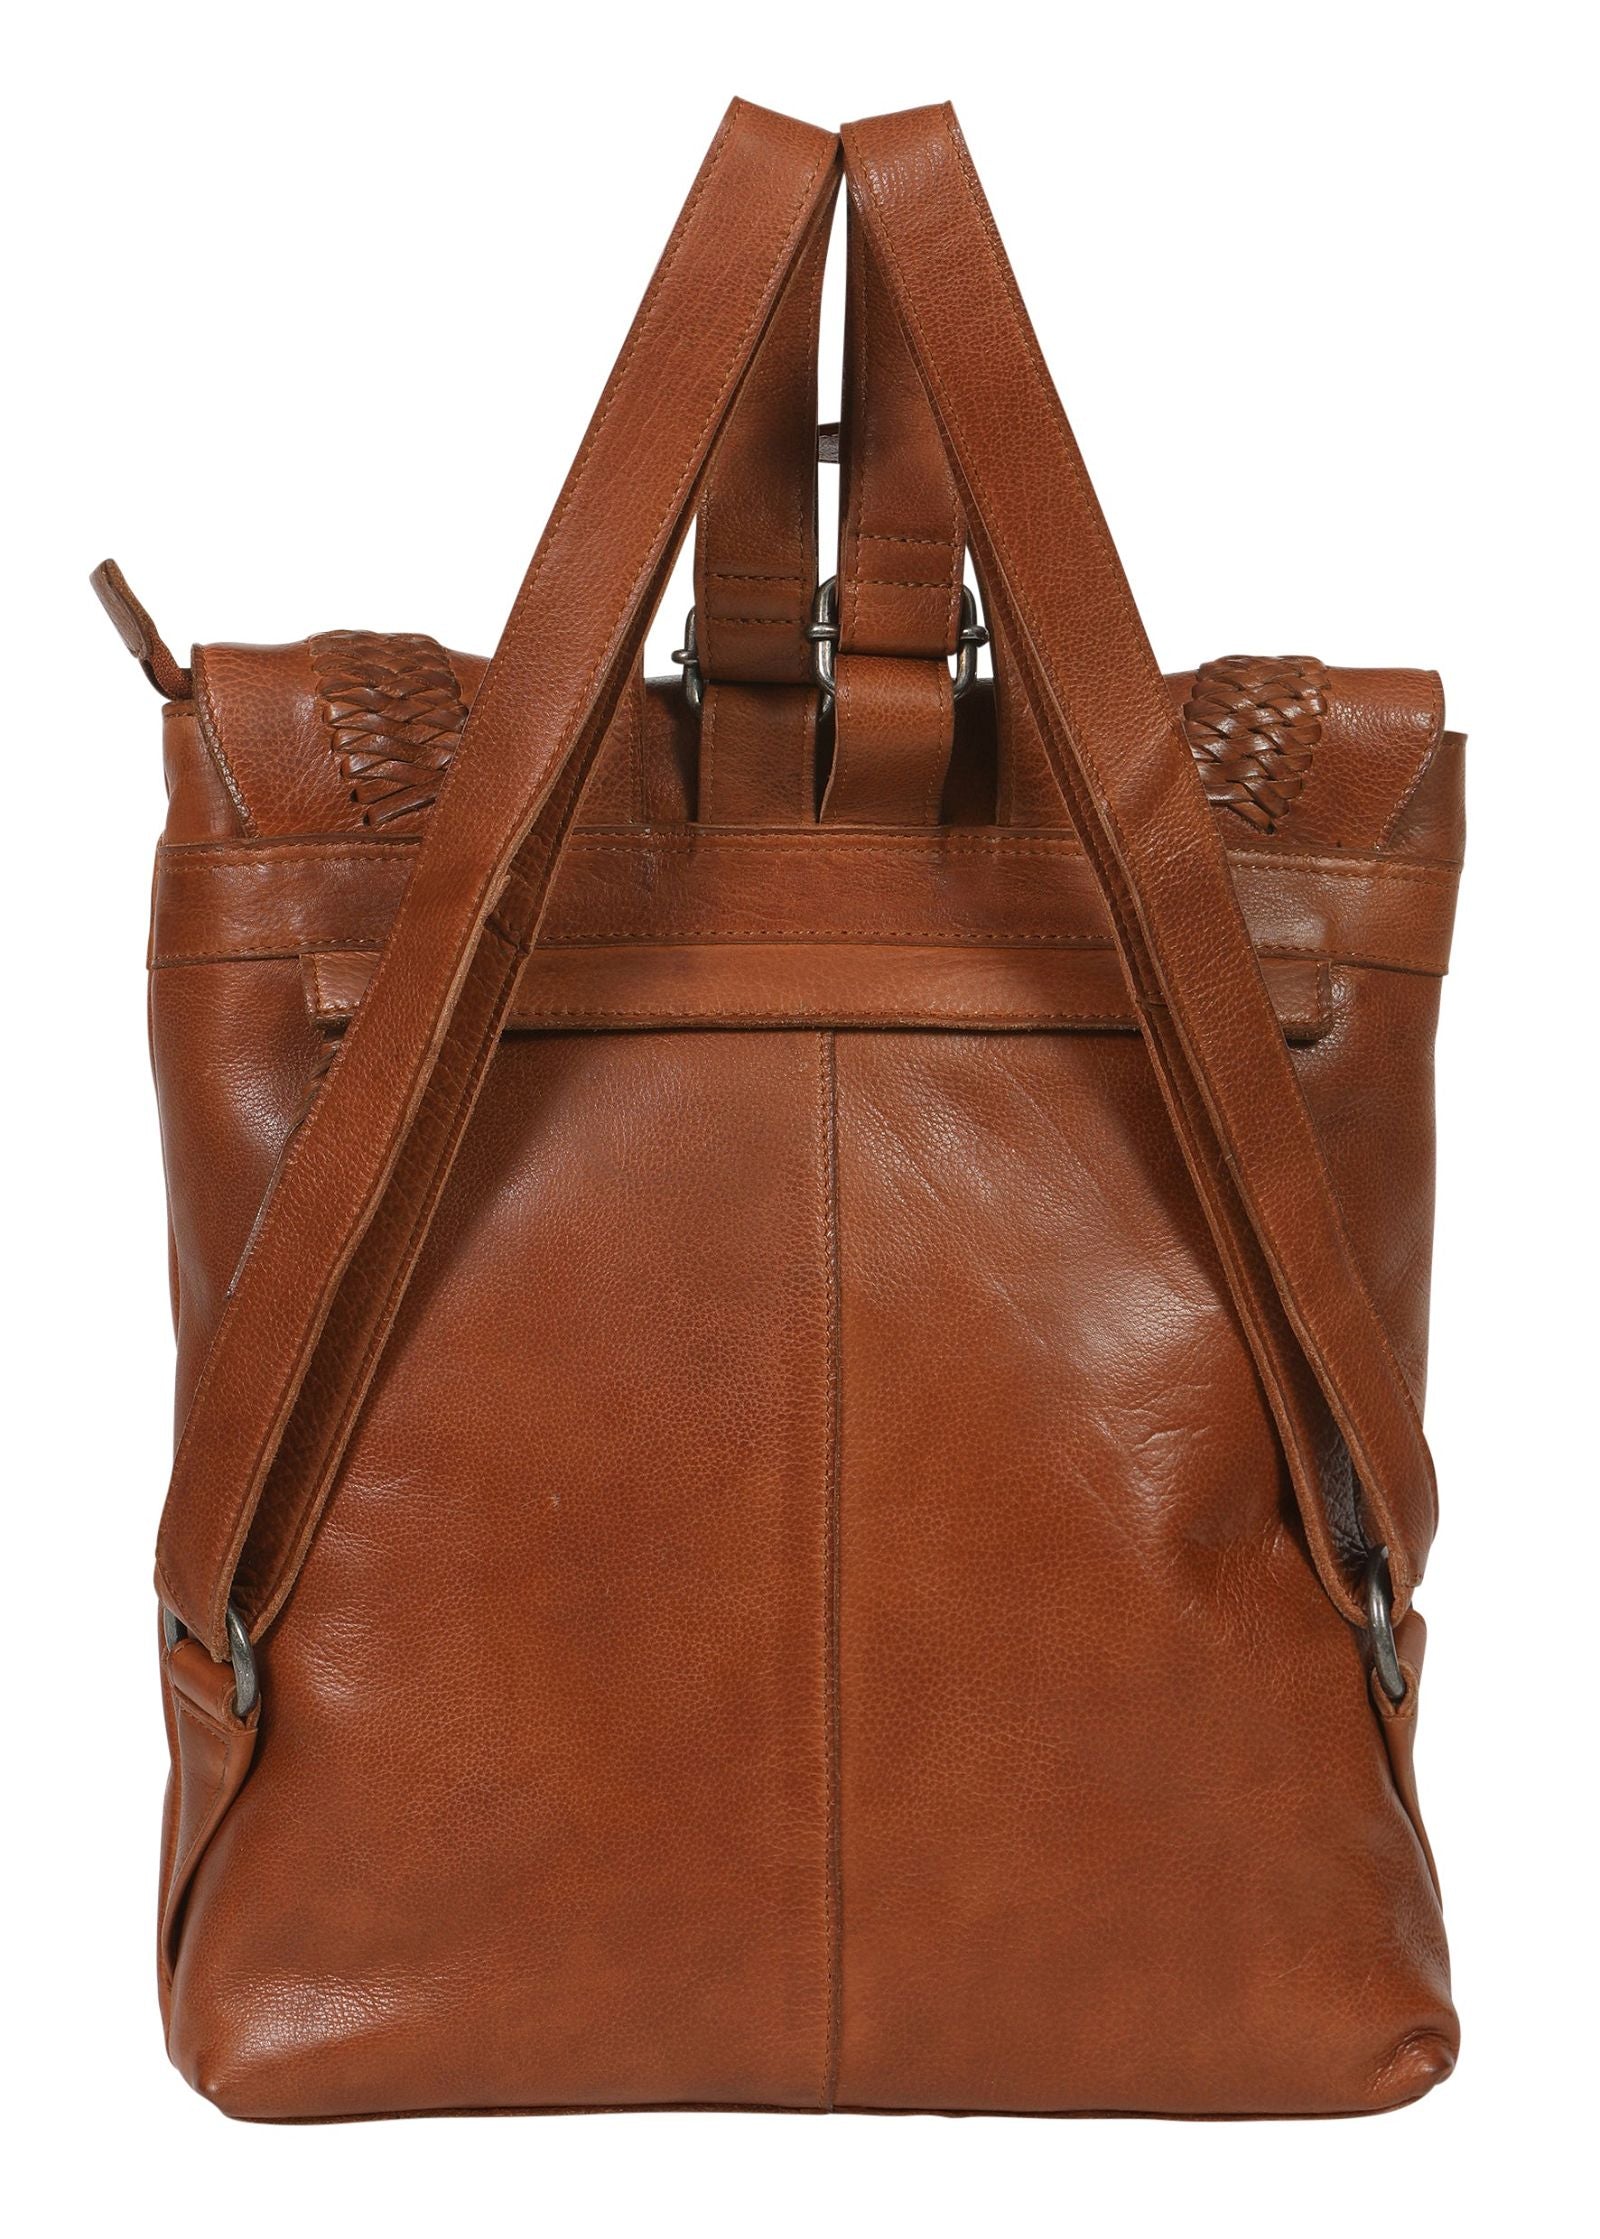 Modapelle - Ladies Vintage Leather Backpack - rainbowbags